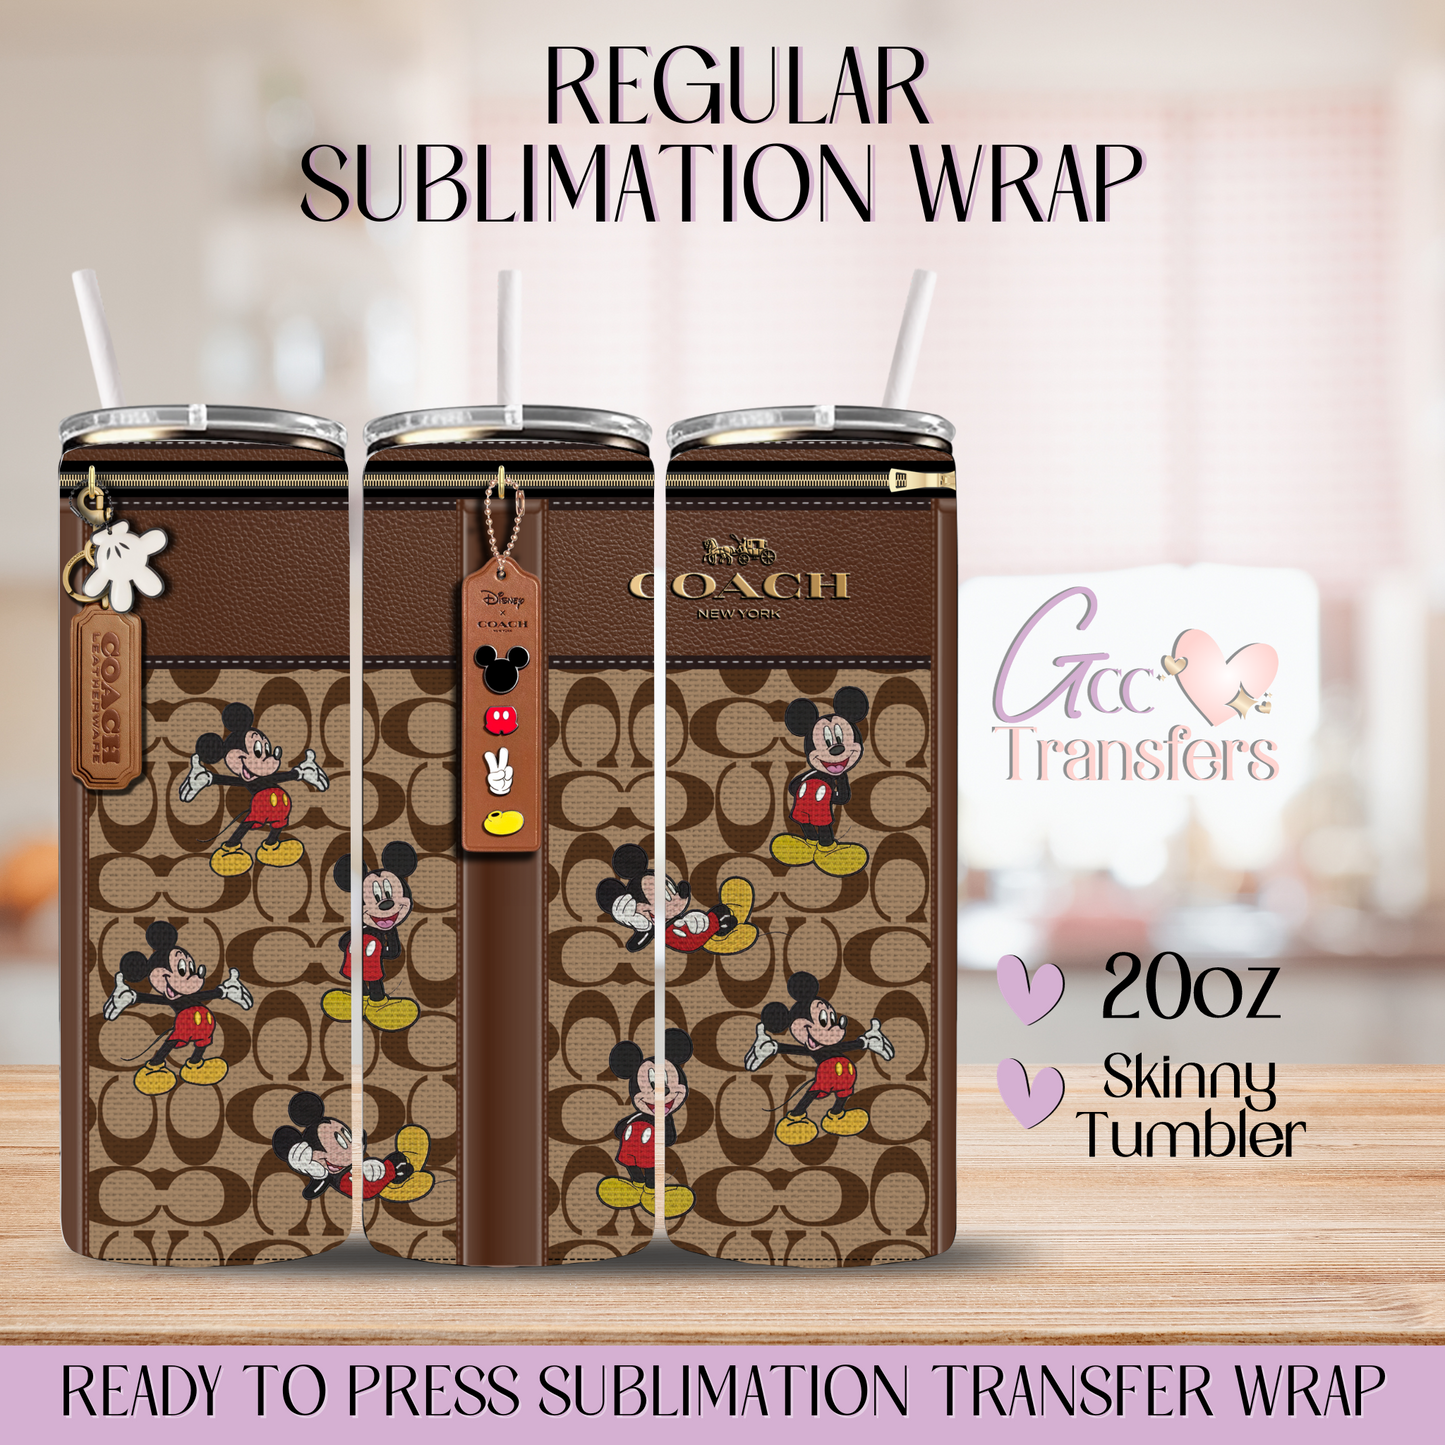 Mouse Fashion Purse - 20oz Regular Sublimation Wrap